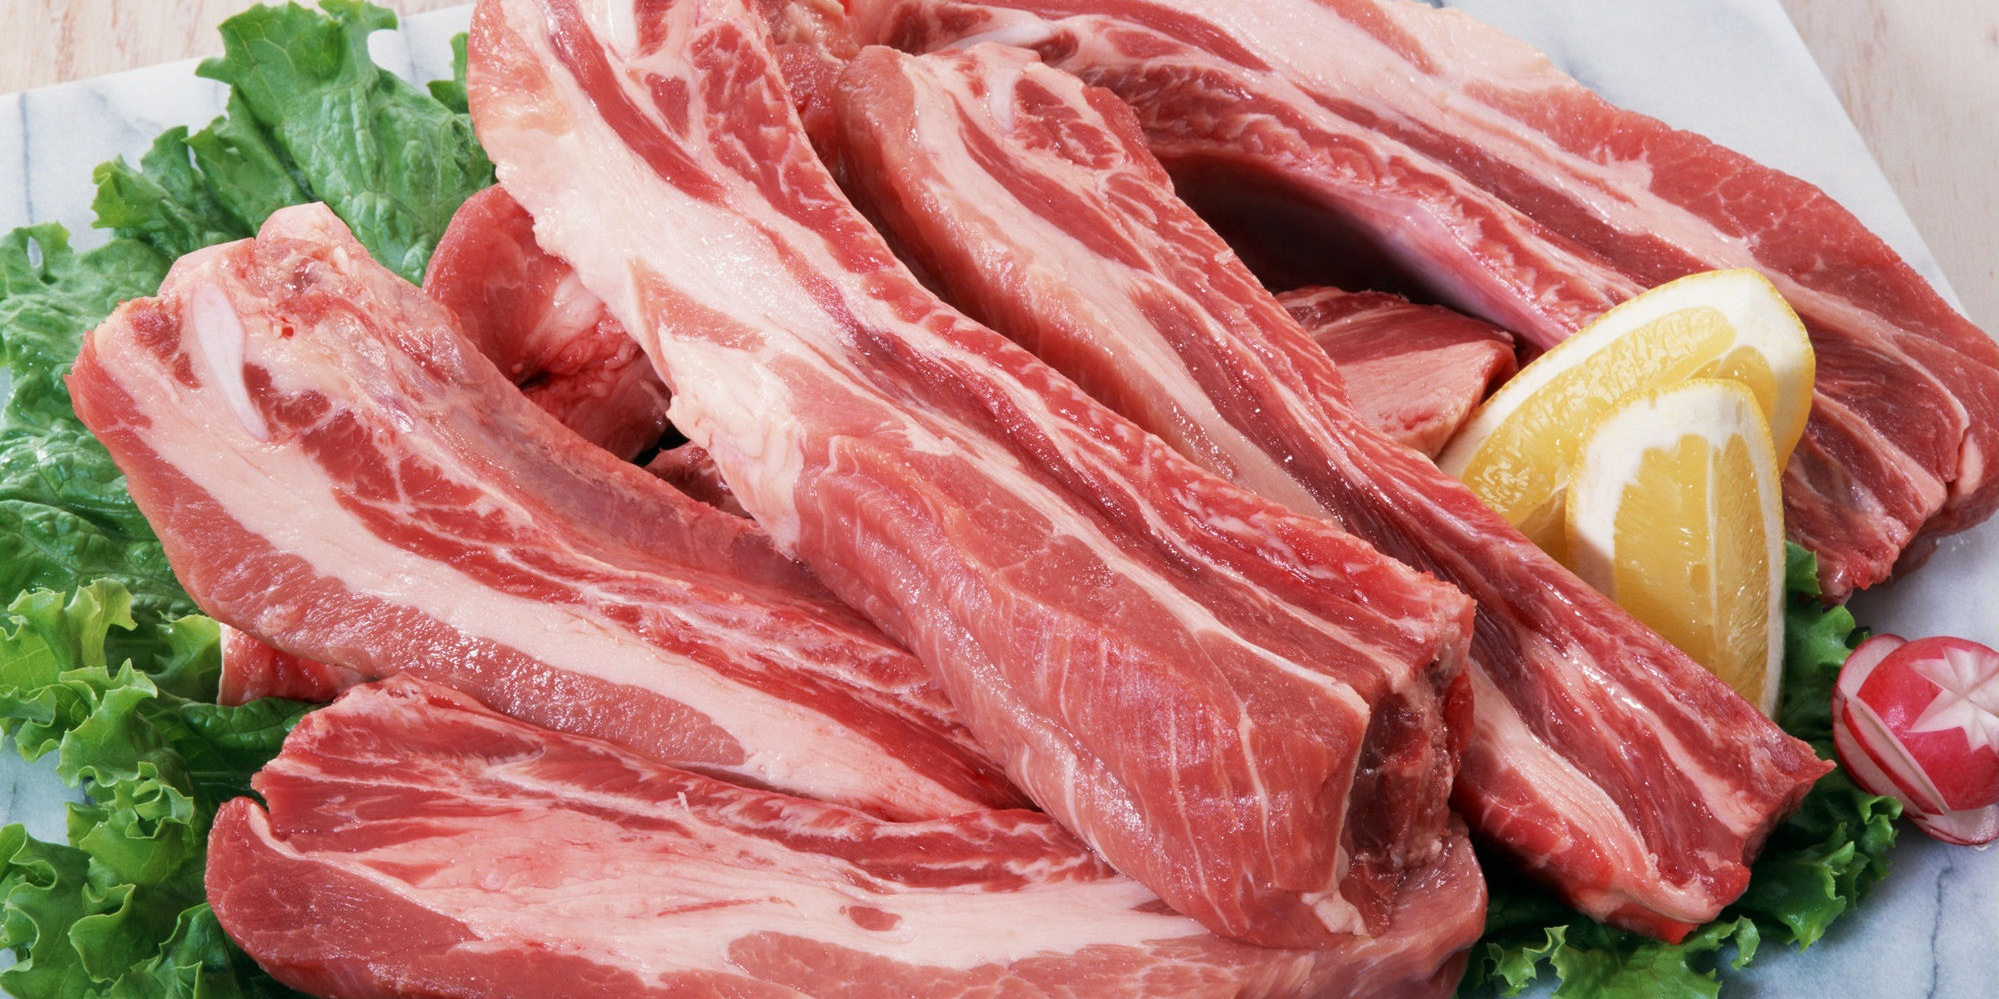 لغو ممنوعیت واردات گوشت از برزیل